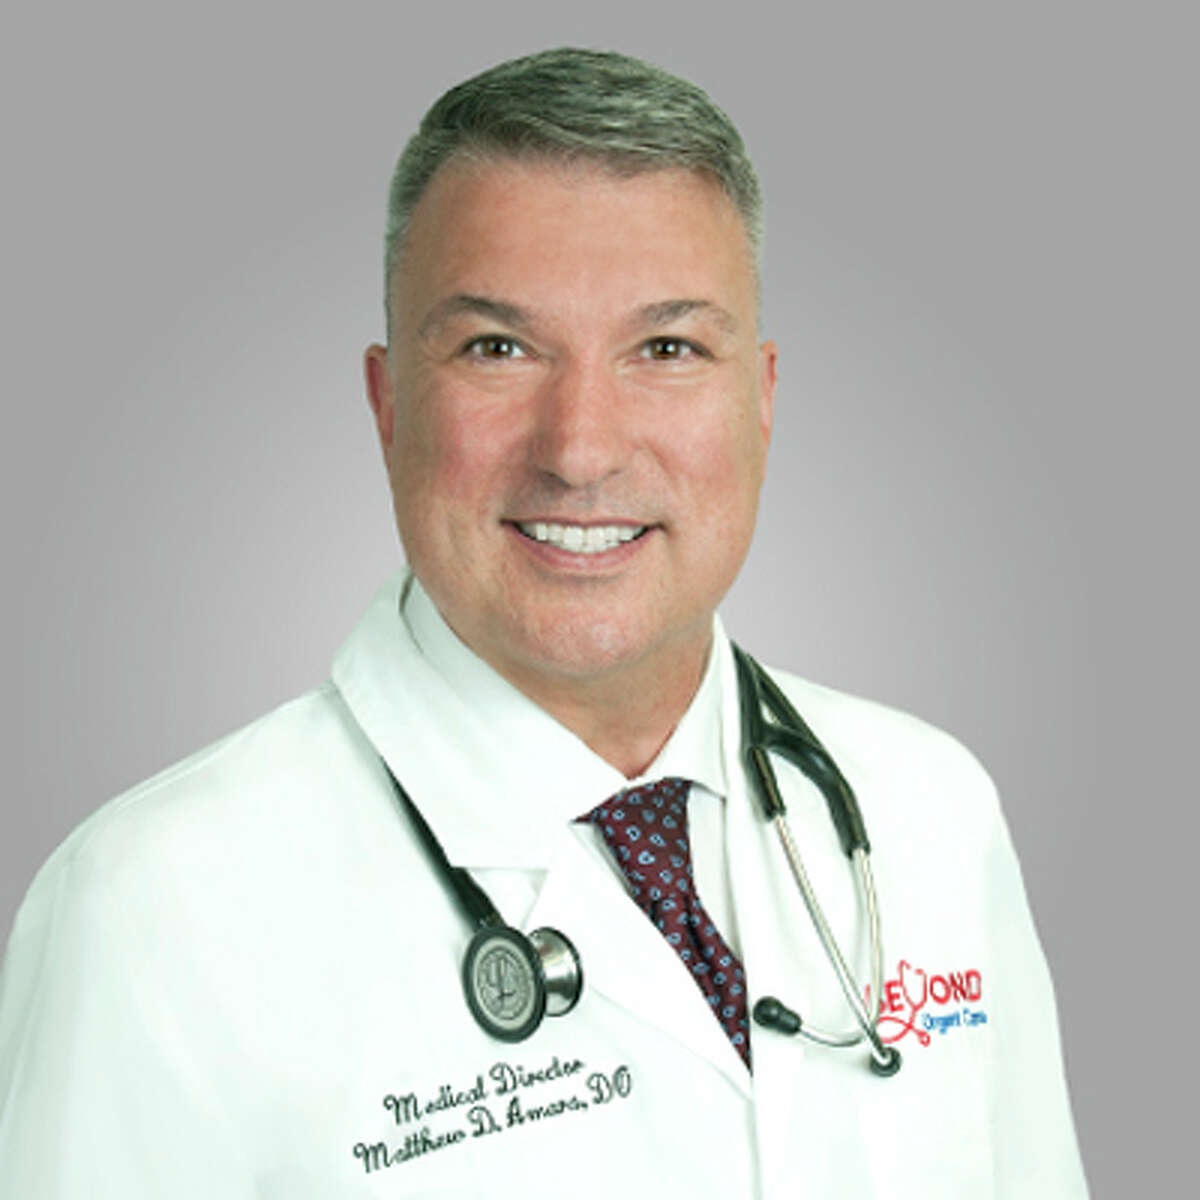 Dr. Matthew D. Amara of Beyond Urgent Care